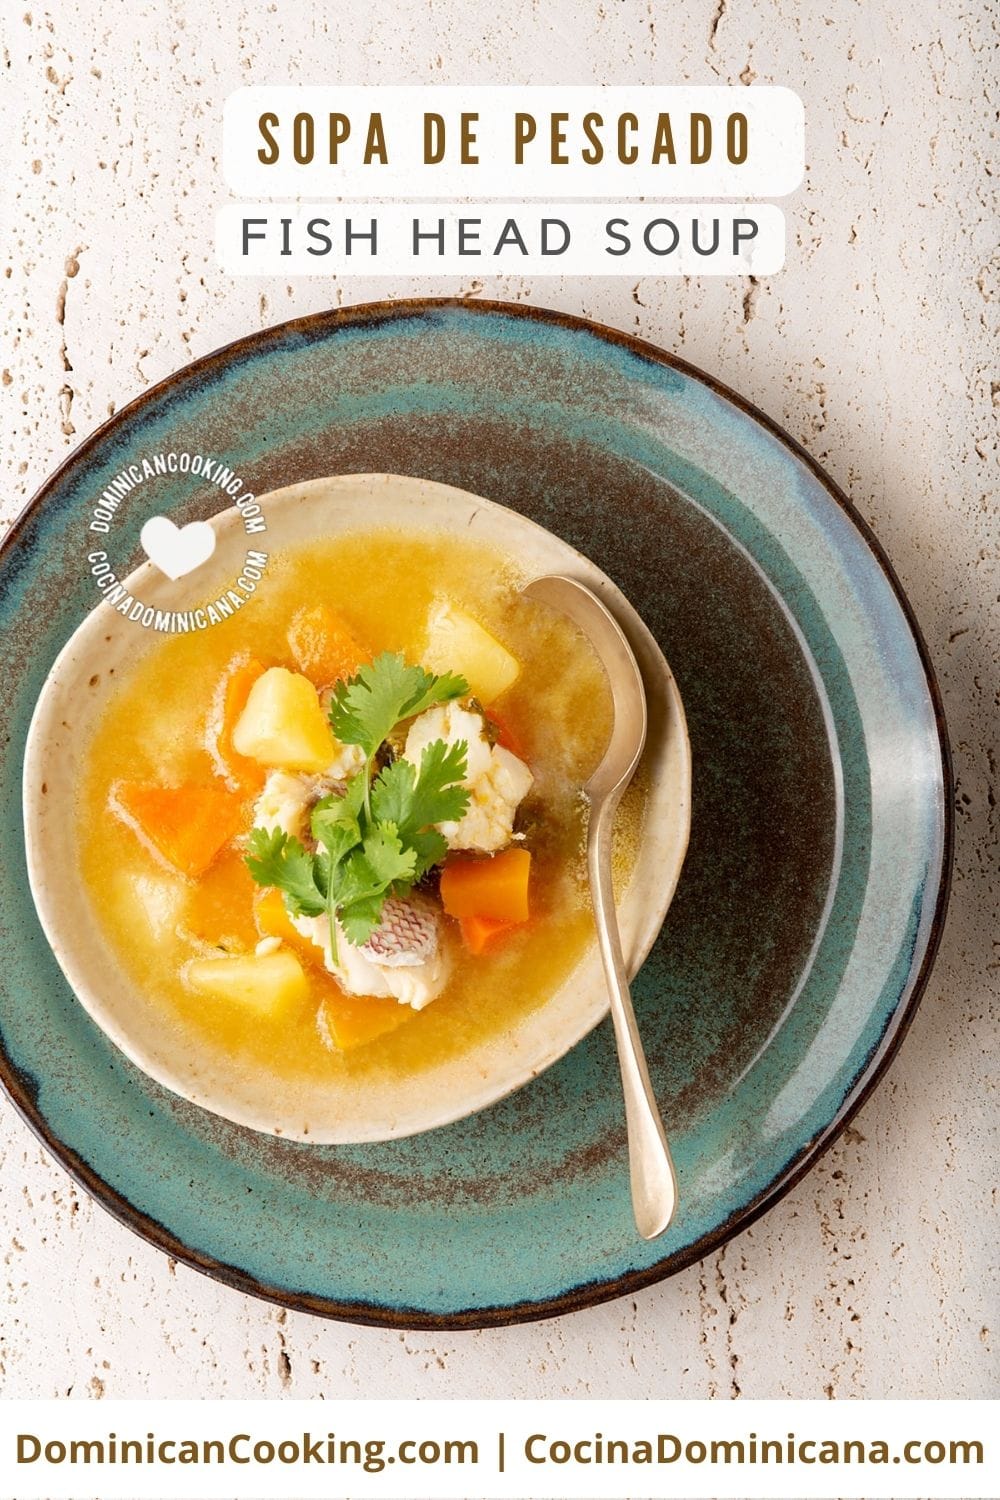 Sopa de pescado (fish head soup) recipe.